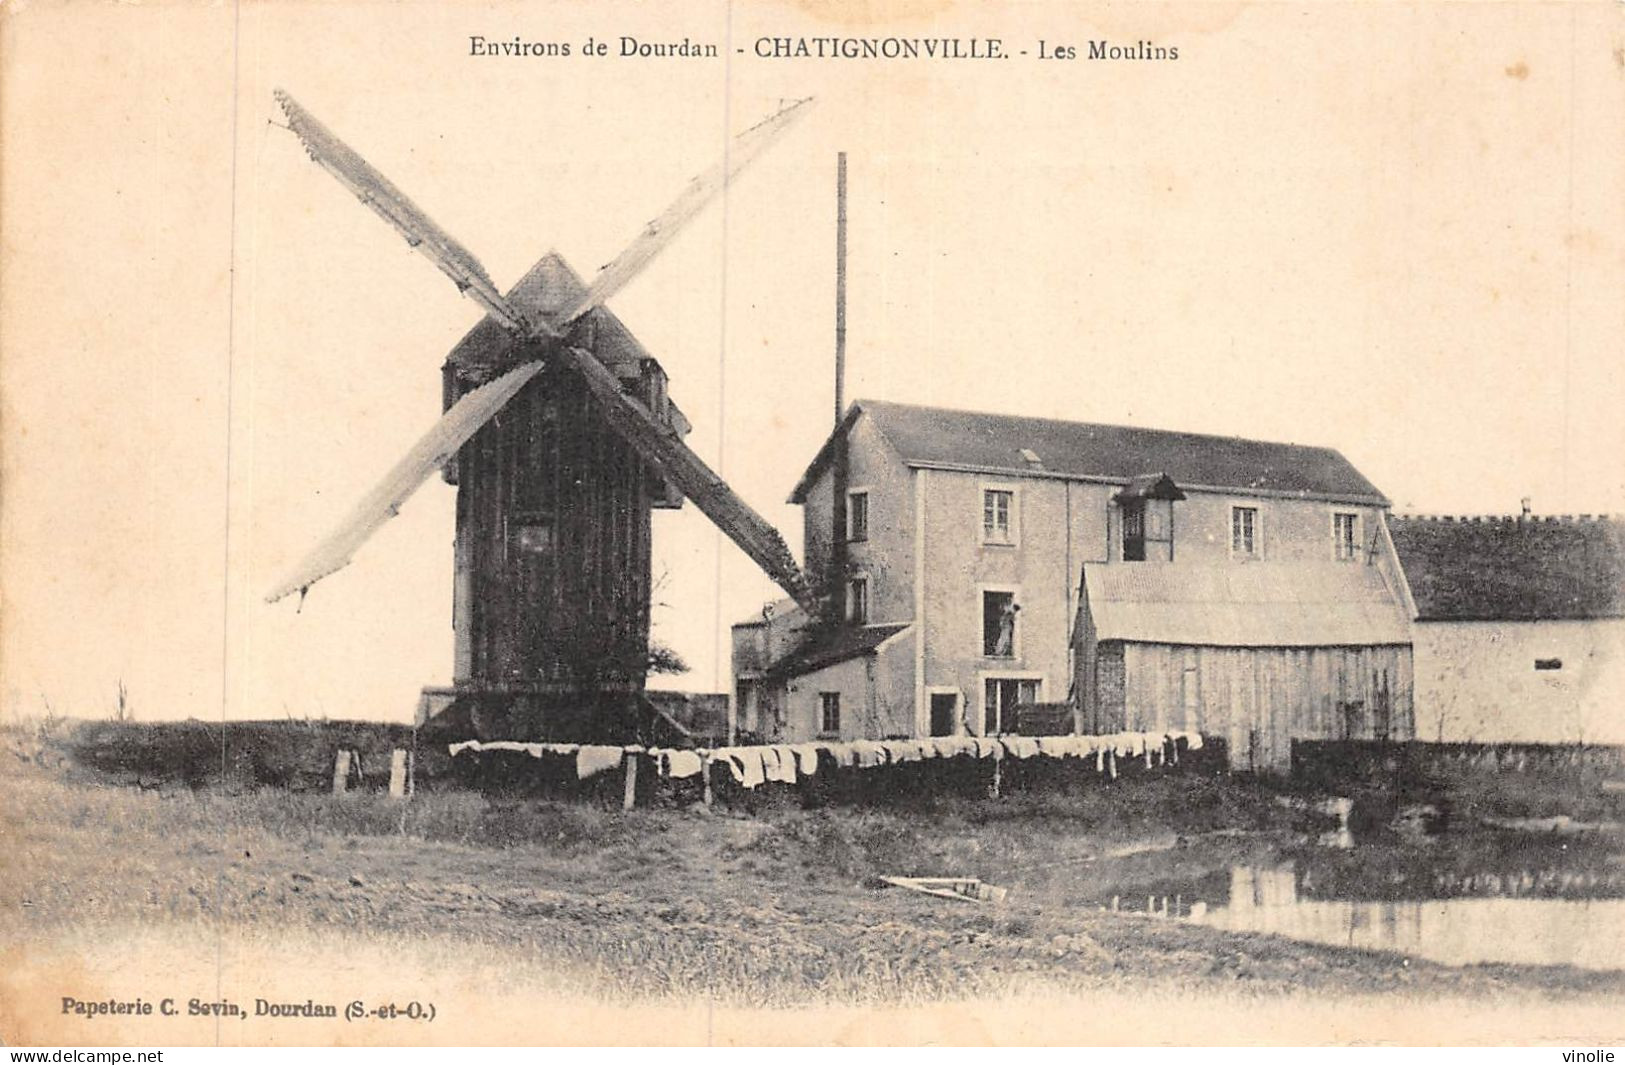 P-24-Mi-Is-1851 : CHATIGNONVILLE. LES MOULINS A EAU ET A VENT. ENVIRONS DE DOURDAN ESSONNE - Windmills